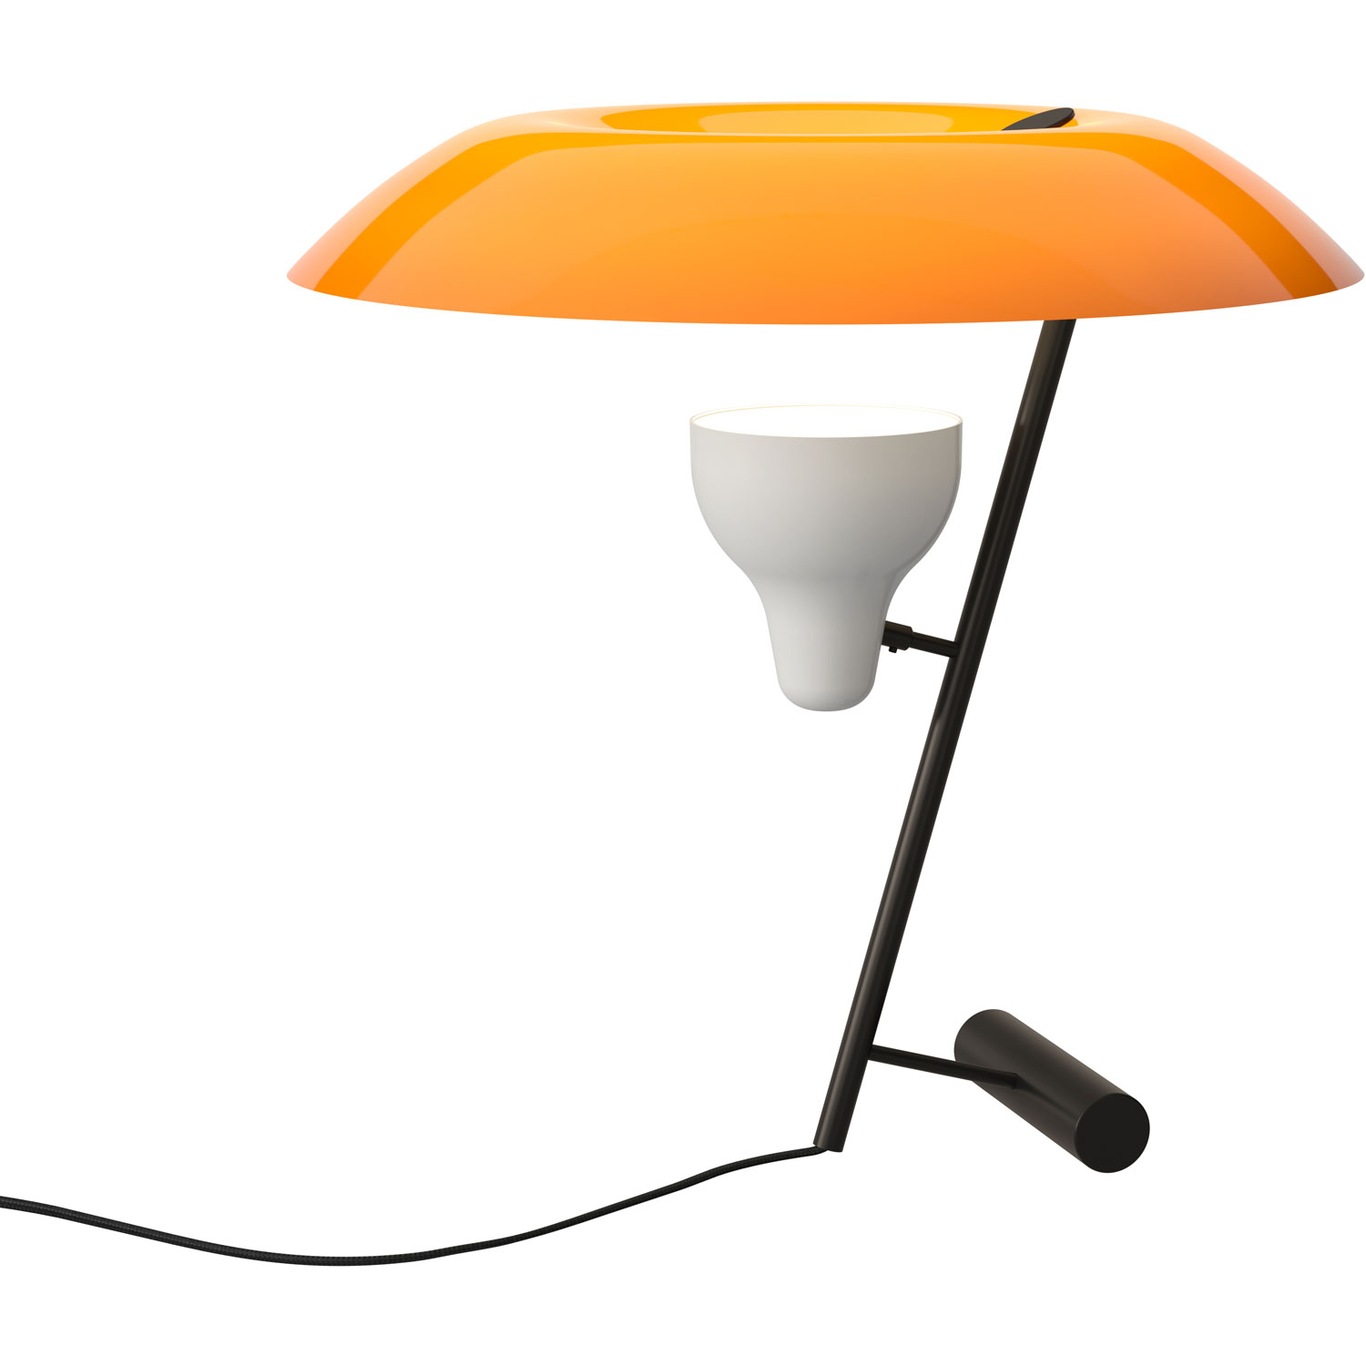 Model 548 Tischlampe, Dunkel poliert Messing / Orange